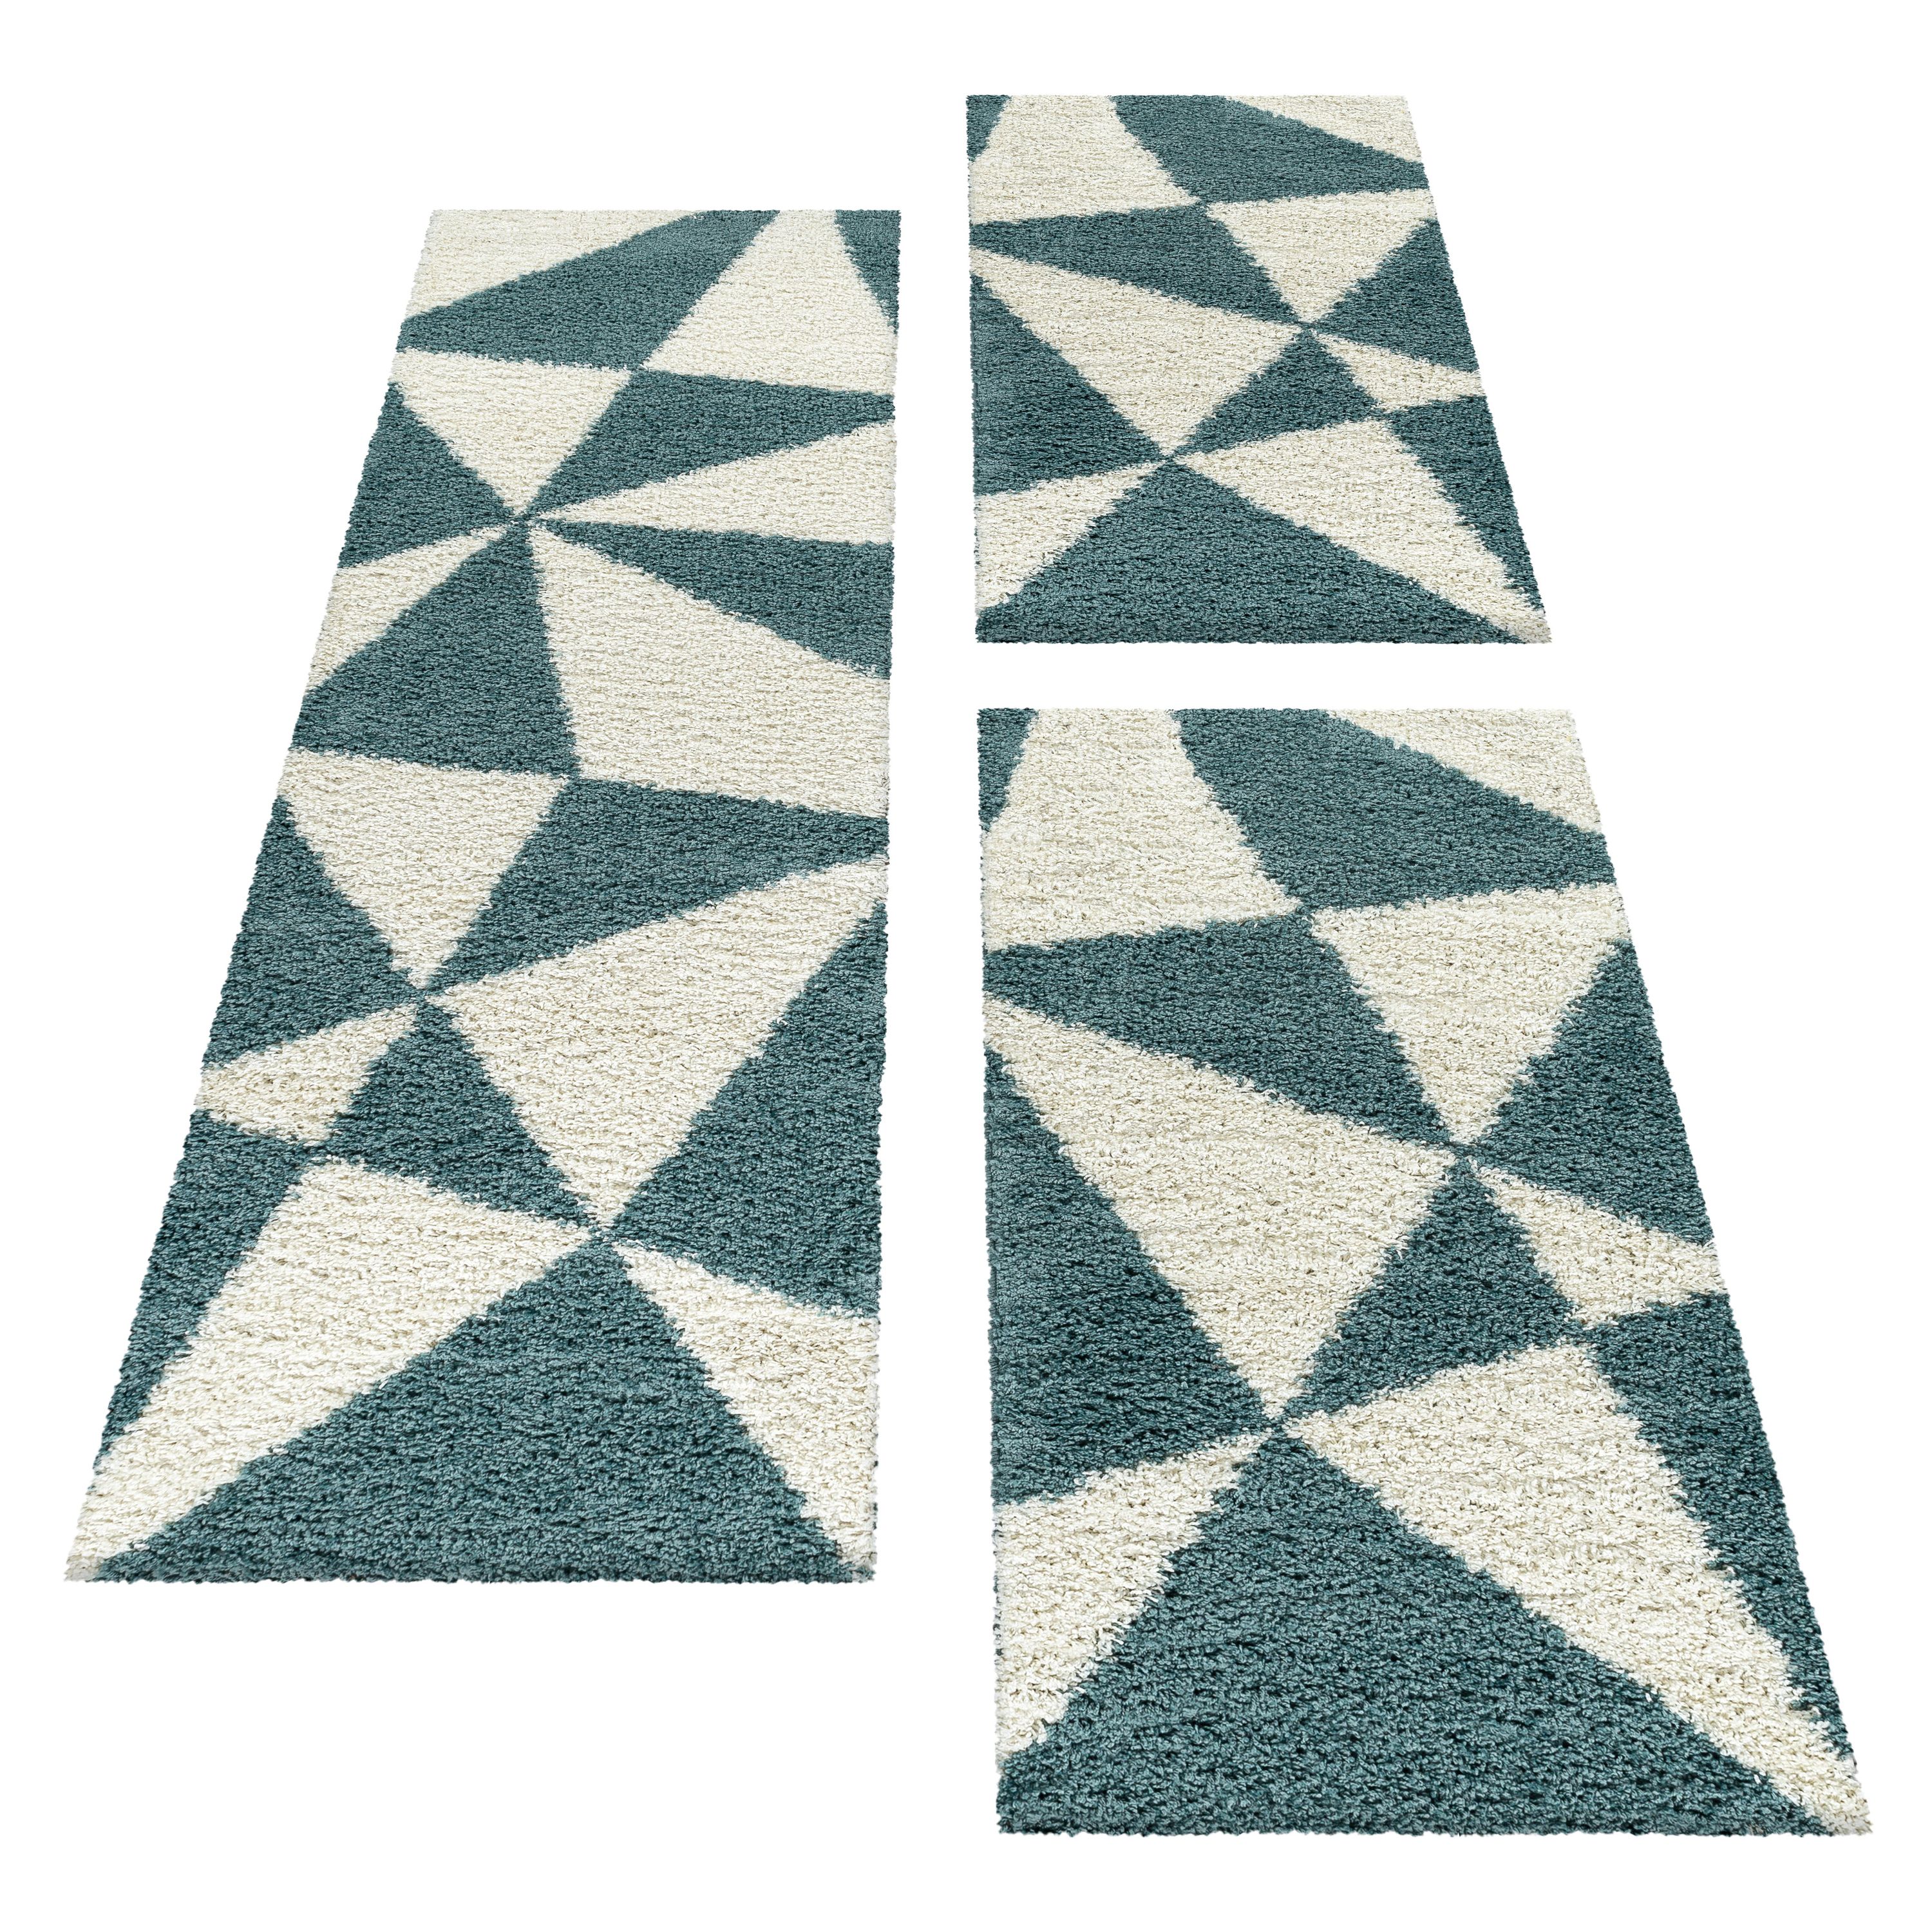 Design Teppich Set Shaggy Bettumrandung Läufer Set Muster Dreiecke 3 Teile Blau